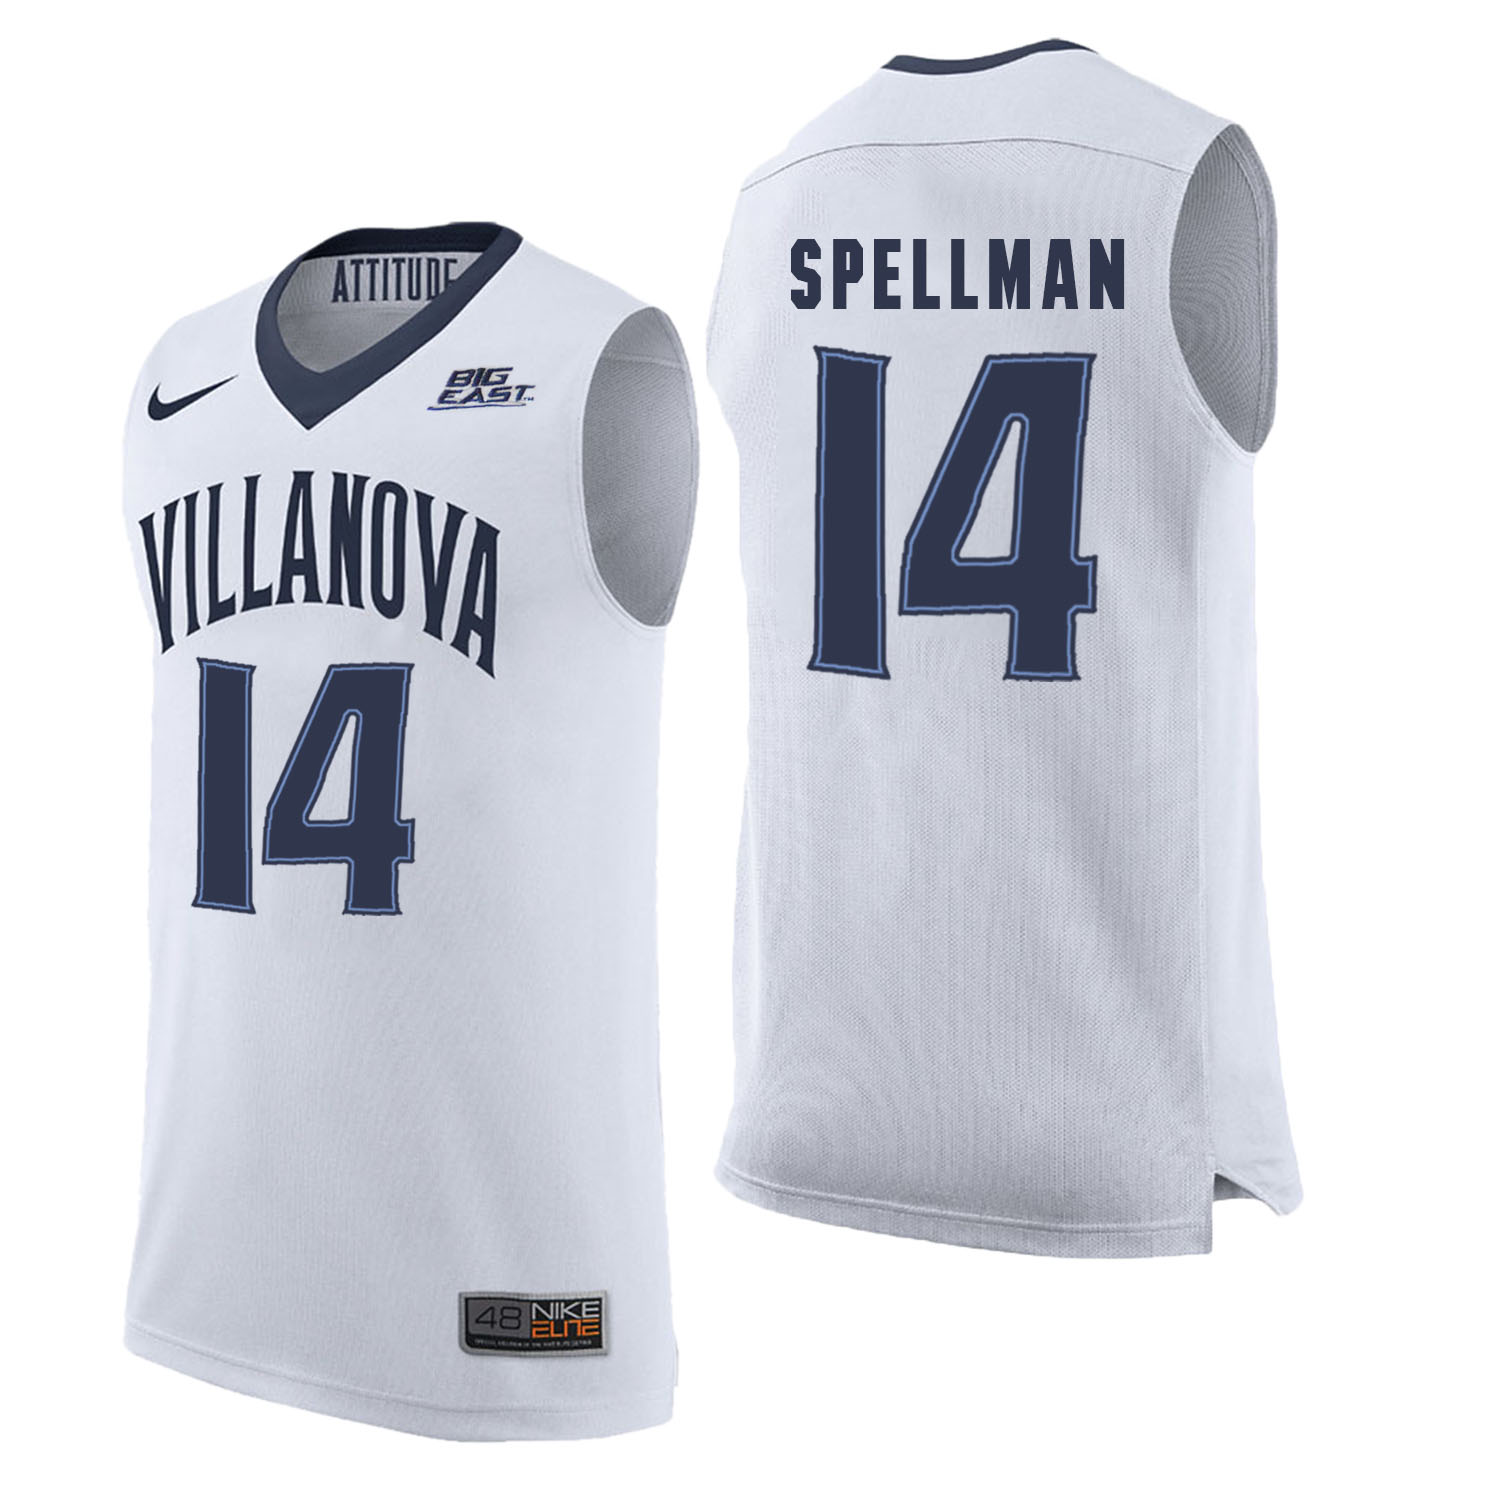 Villanova Wildcats 14 Omari Spellman White College Basketball Elite Jersey - Click Image to Close